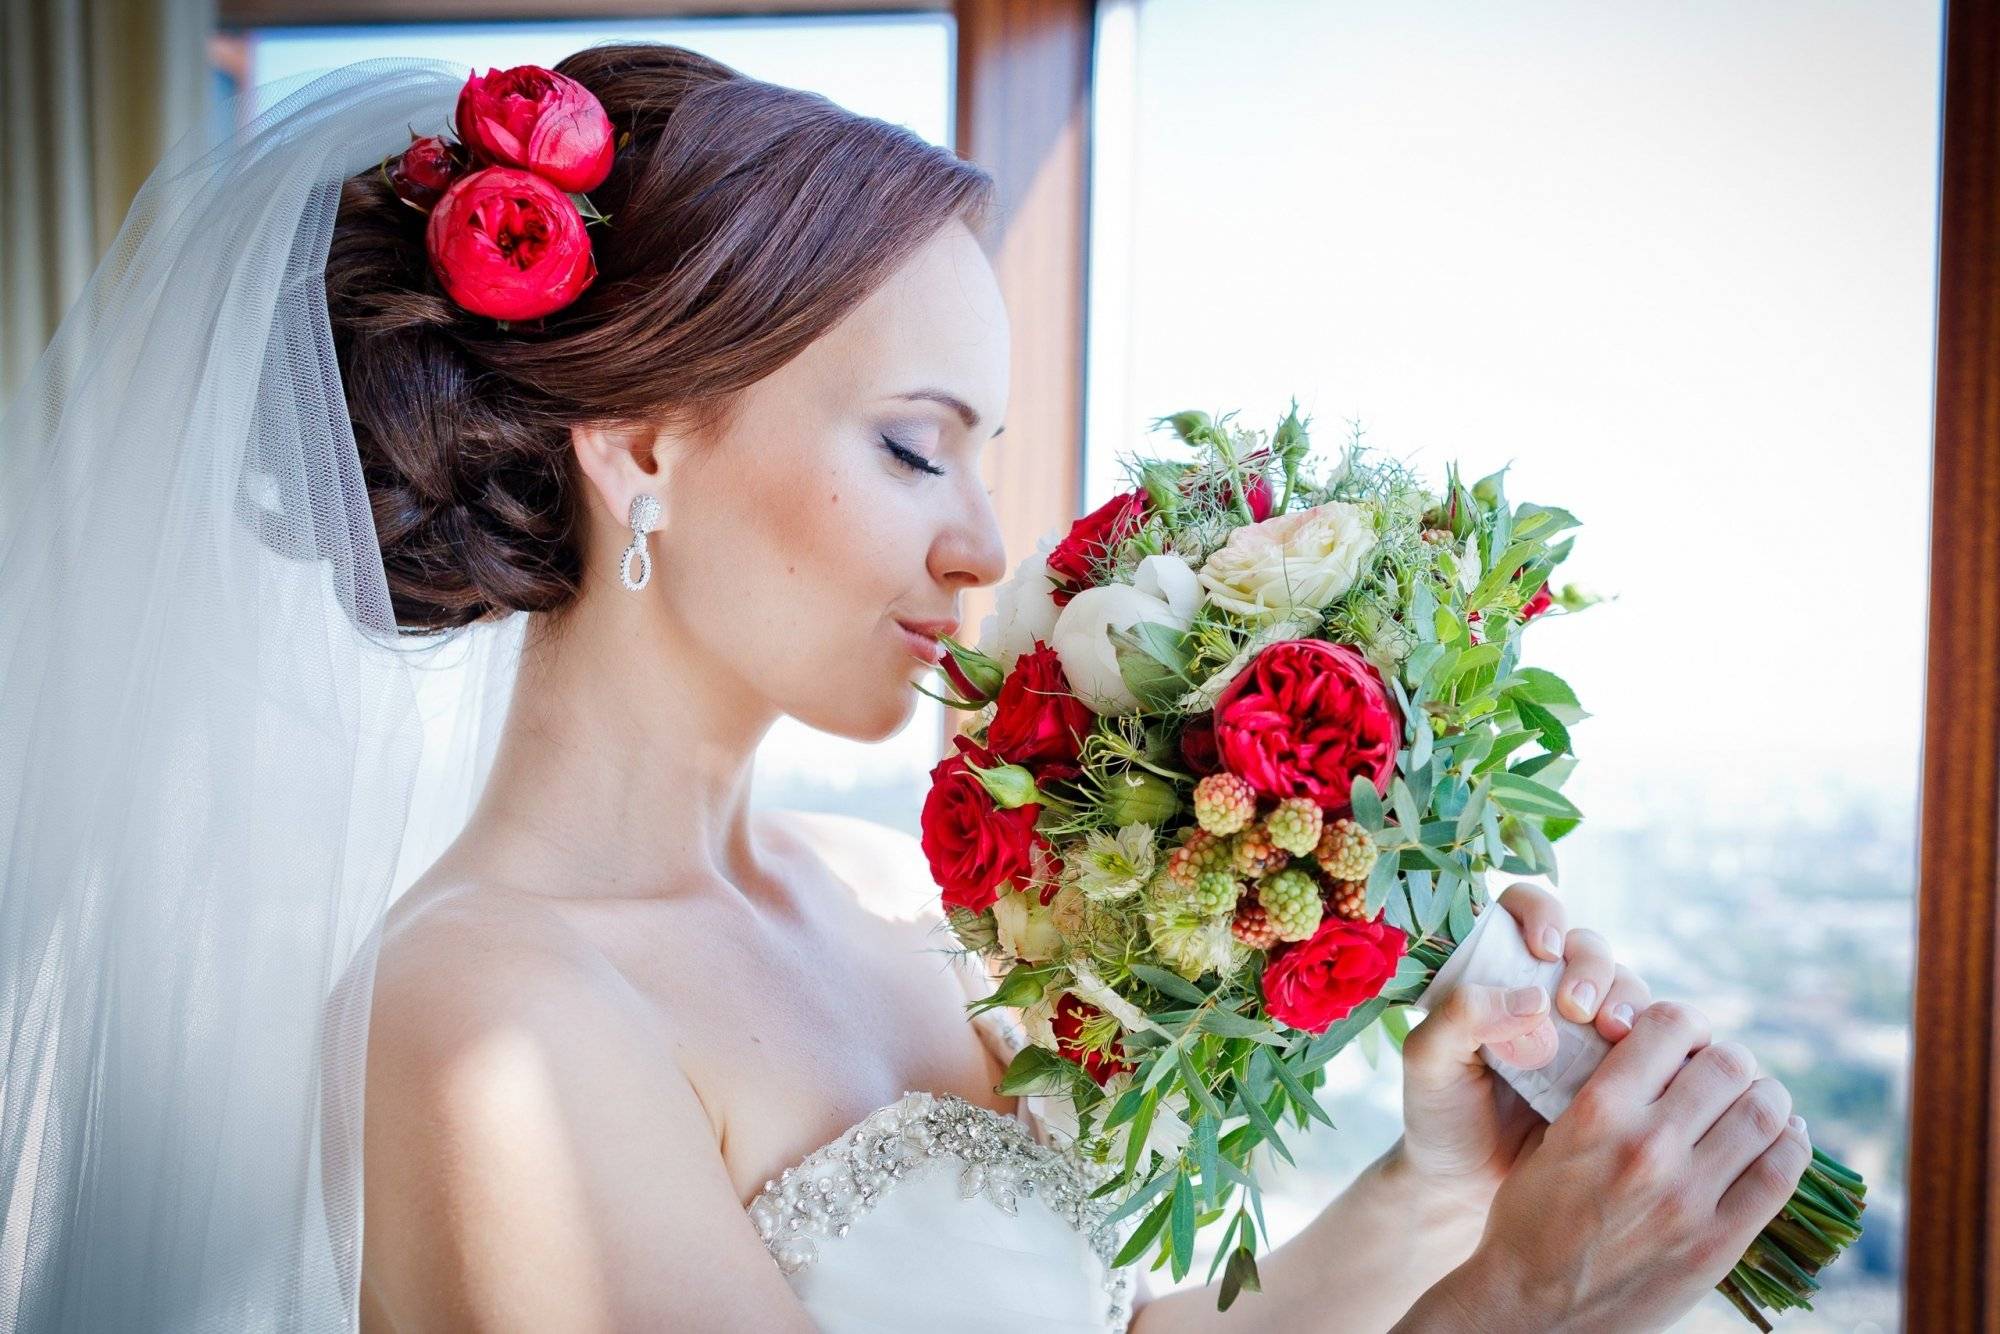 Прически с цветами в волосах - фото свадебных и вечерних укладок